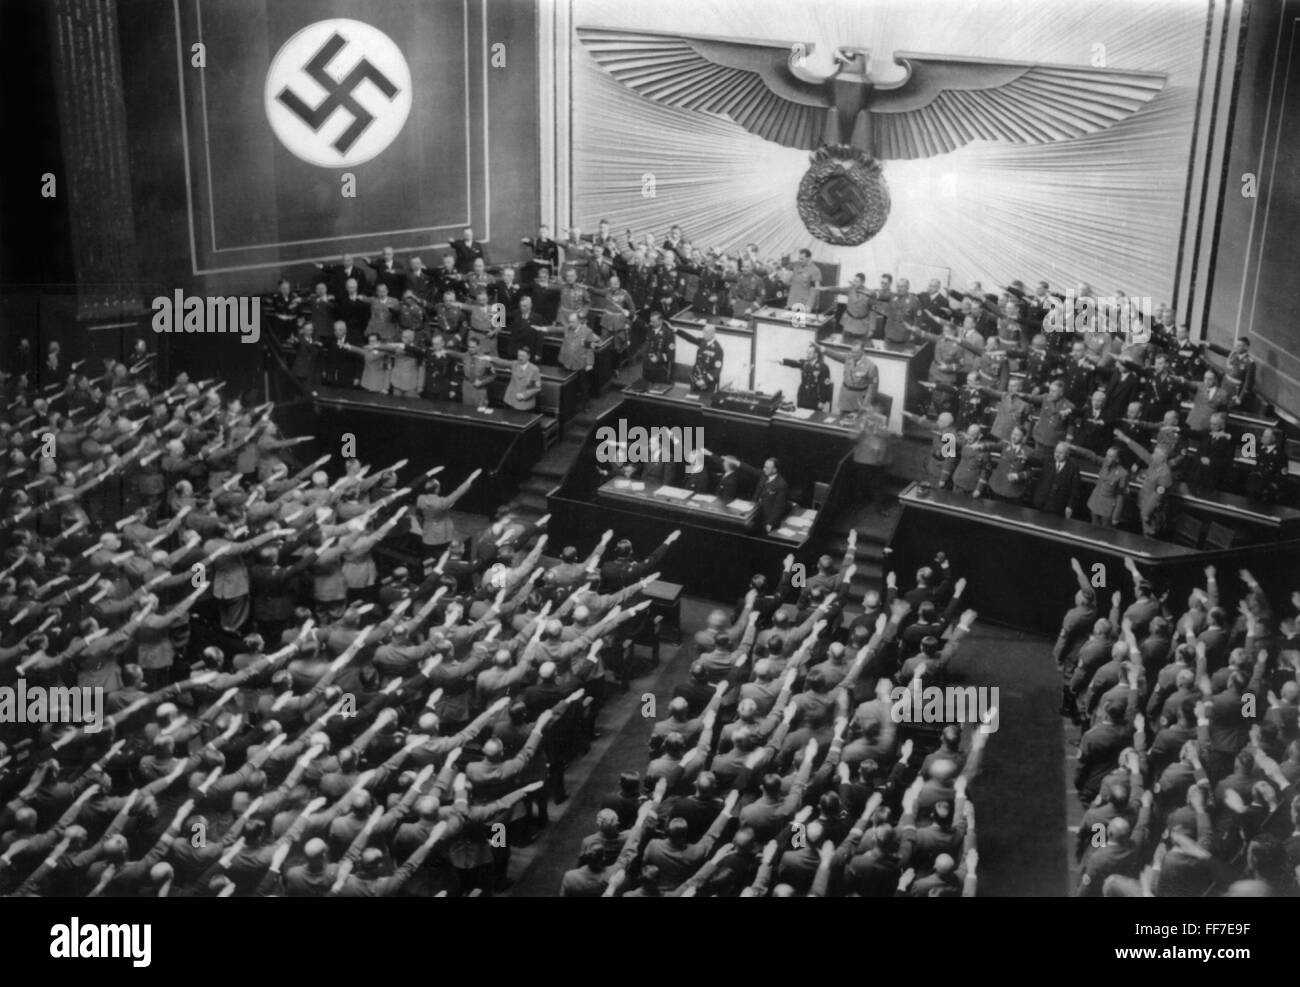 Nationalsozialismus / Nationalsozialismus, Politik, Regierung, Reichstag anlässlich Hitlers Erklärung zum 5. Jahrestag der Machtergreifung der NS-Partei, Kroll Opera House, Berlin, 20.2.1938, Zusatzrechte-Clearences-nicht vorhanden Stockfoto